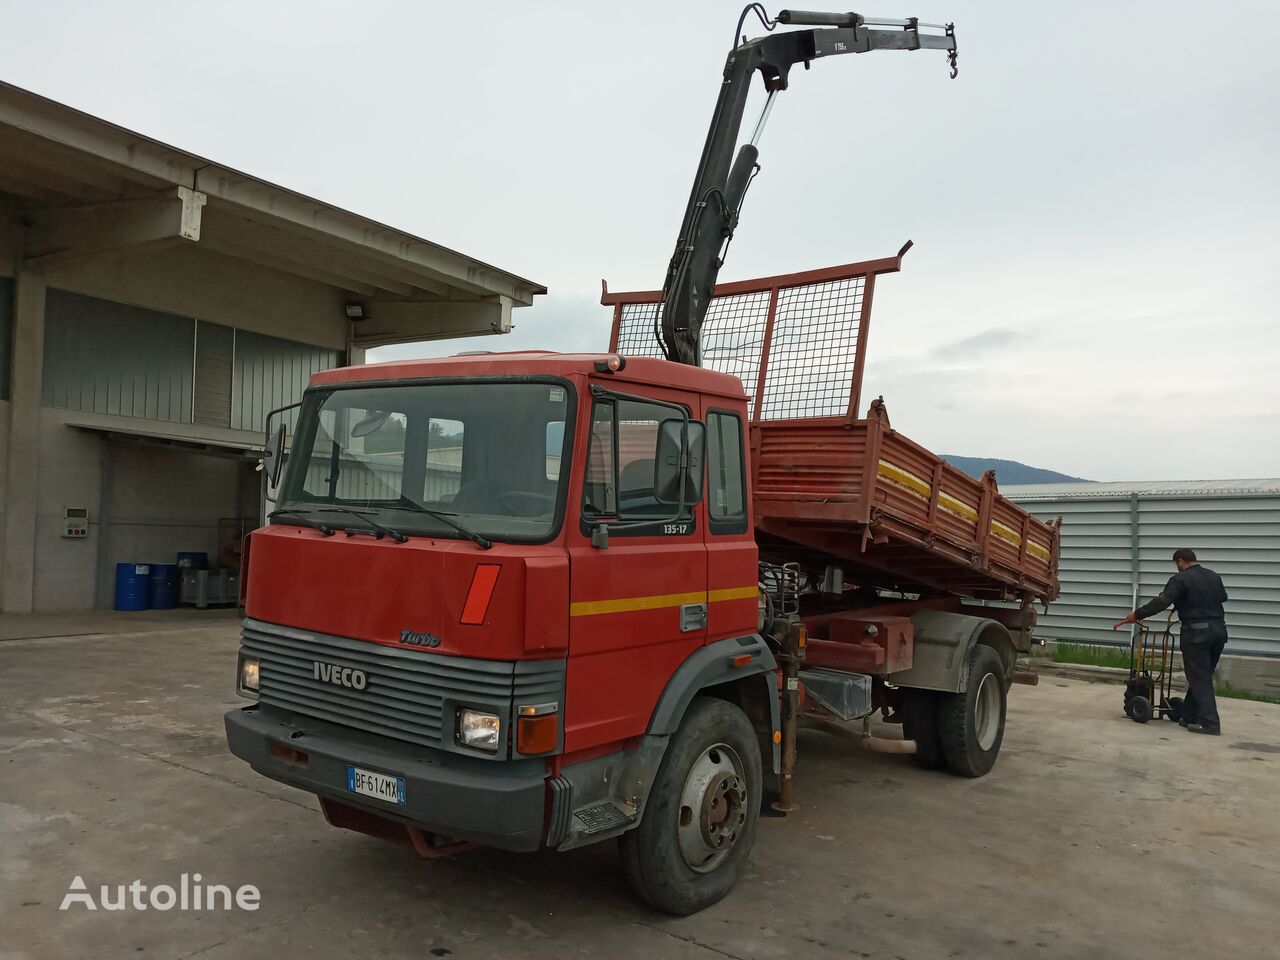 IVECO 135.17K dump truck